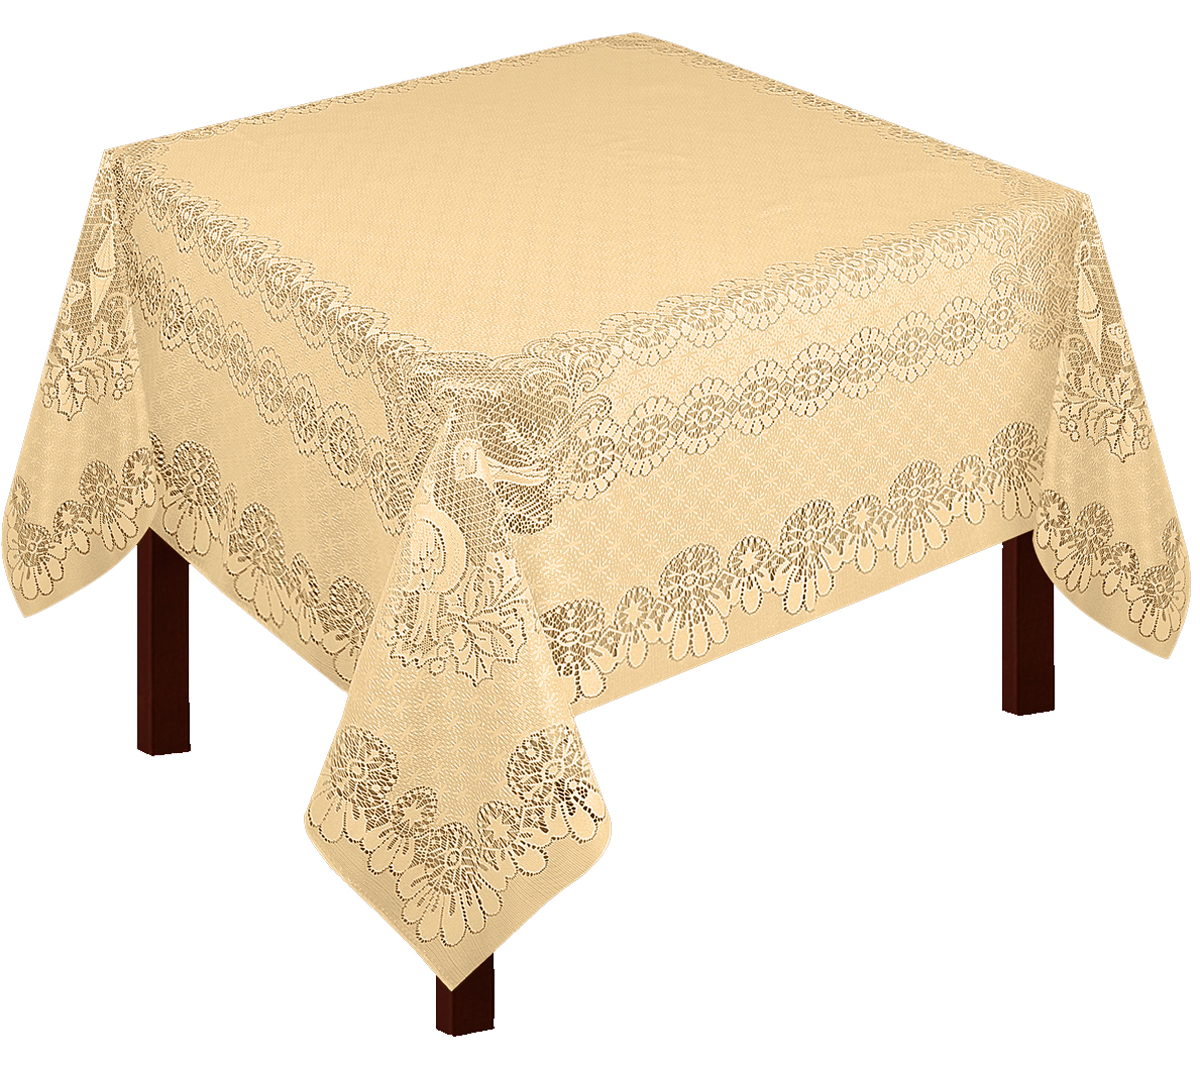 В честь именин марианны стол накрыт вязаной скатертью изысканной и чопорной